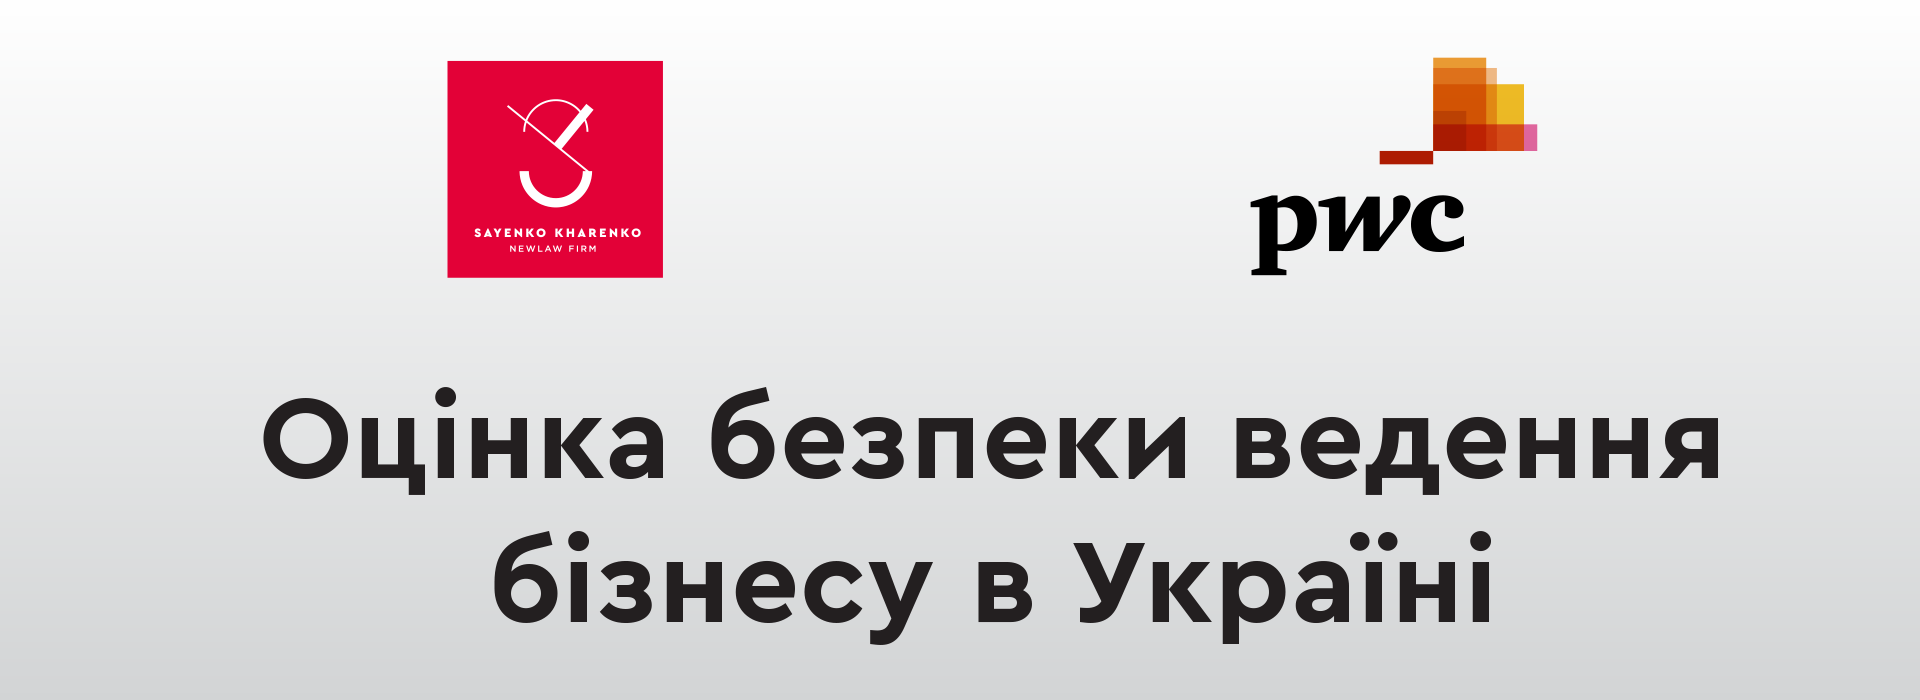 Sayenko Kharenko і PwC Україна проводять дослідження «Оцінка безпеки ведення бізнесу в Україні» 2.0